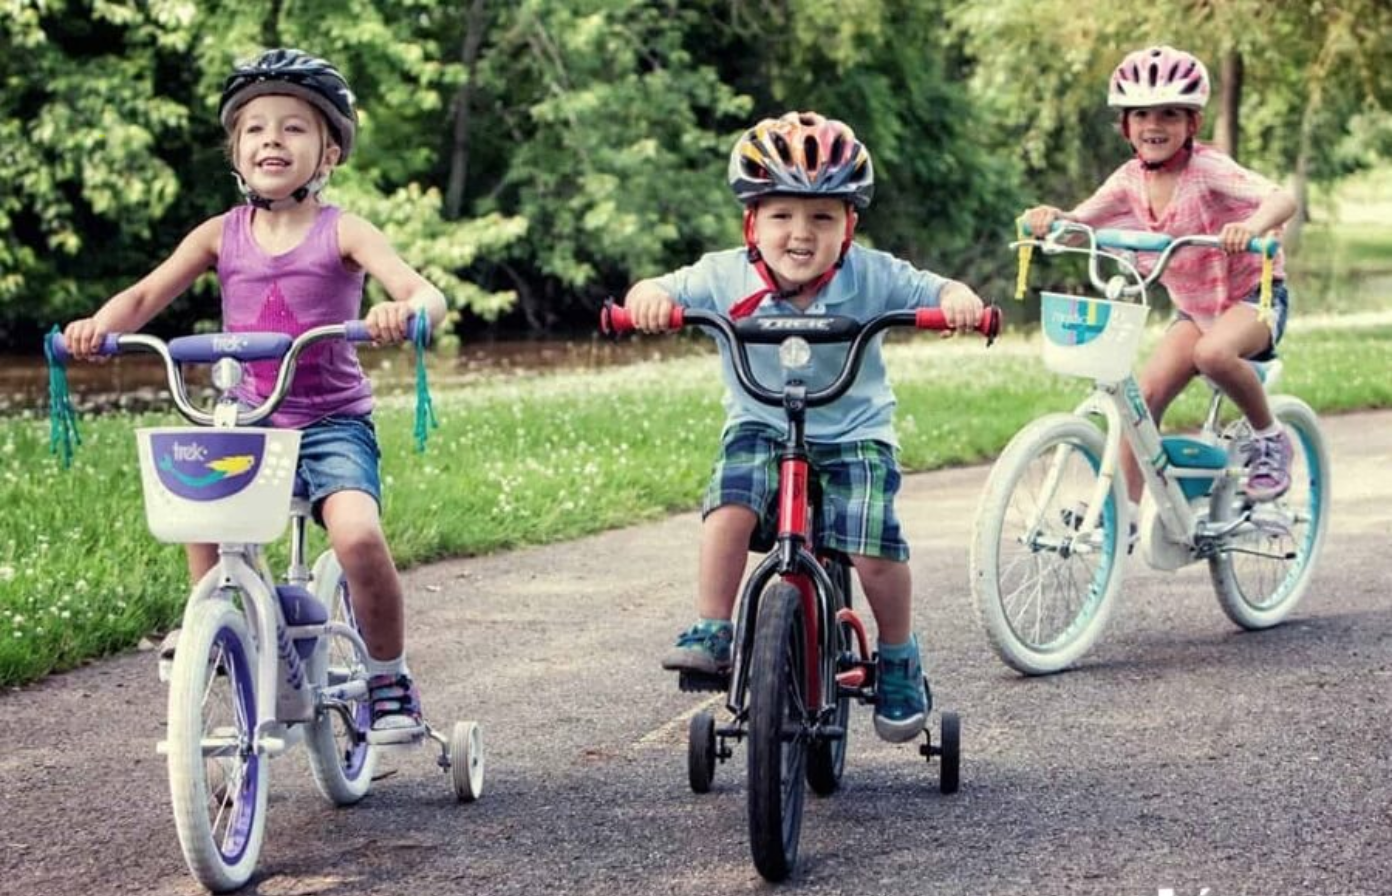 Bánh xe đạp trẻ em là một trong những yếu tố tạo nên sự an toàn và độ bền cho chiếc xe đạp của bé. Với nhiều lựa chọn về màu sắc, kiểu dáng và chất liệu, hãy cùng khám phá những bánh xe đạp trẻ em đầy sáng tạo và đáng yêu nhất.